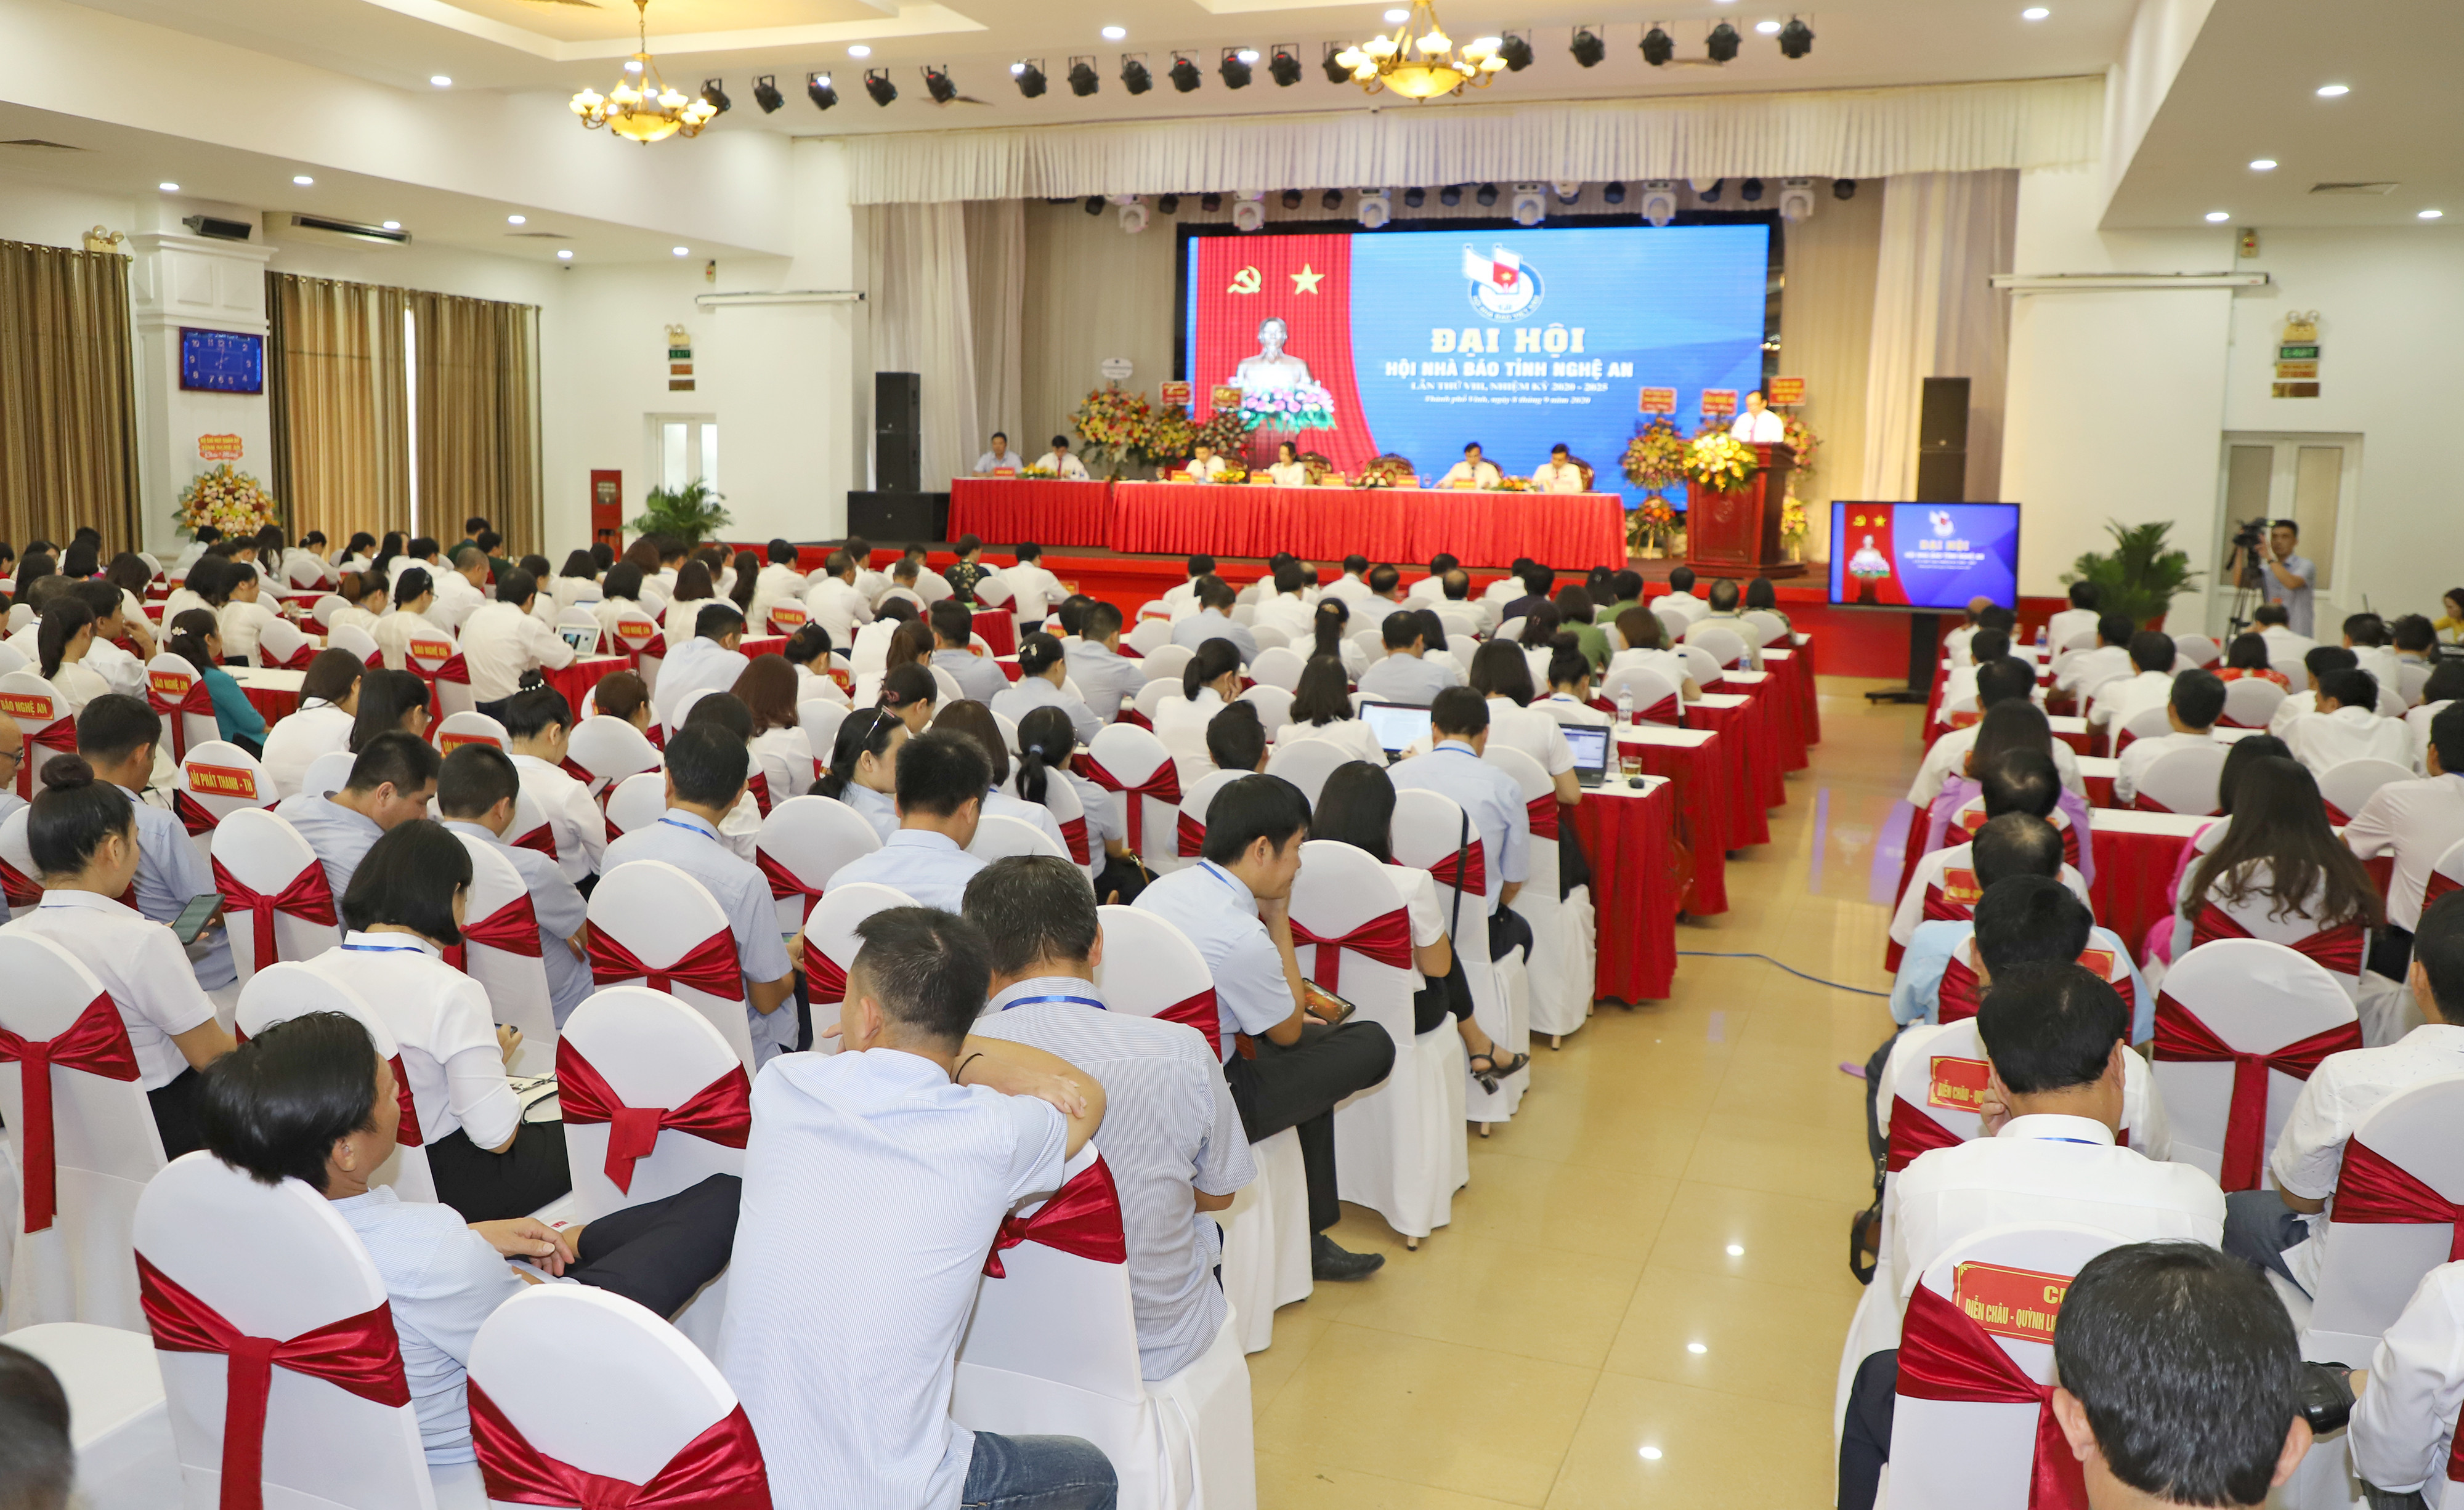 Quang cảnh phiên chính thức Đại hội Hội Nhà báo tỉnh Nghệ An lần thứ VIII, nhiệm kỳ 2020 - 2025. Ảnh: Phạm Bằng